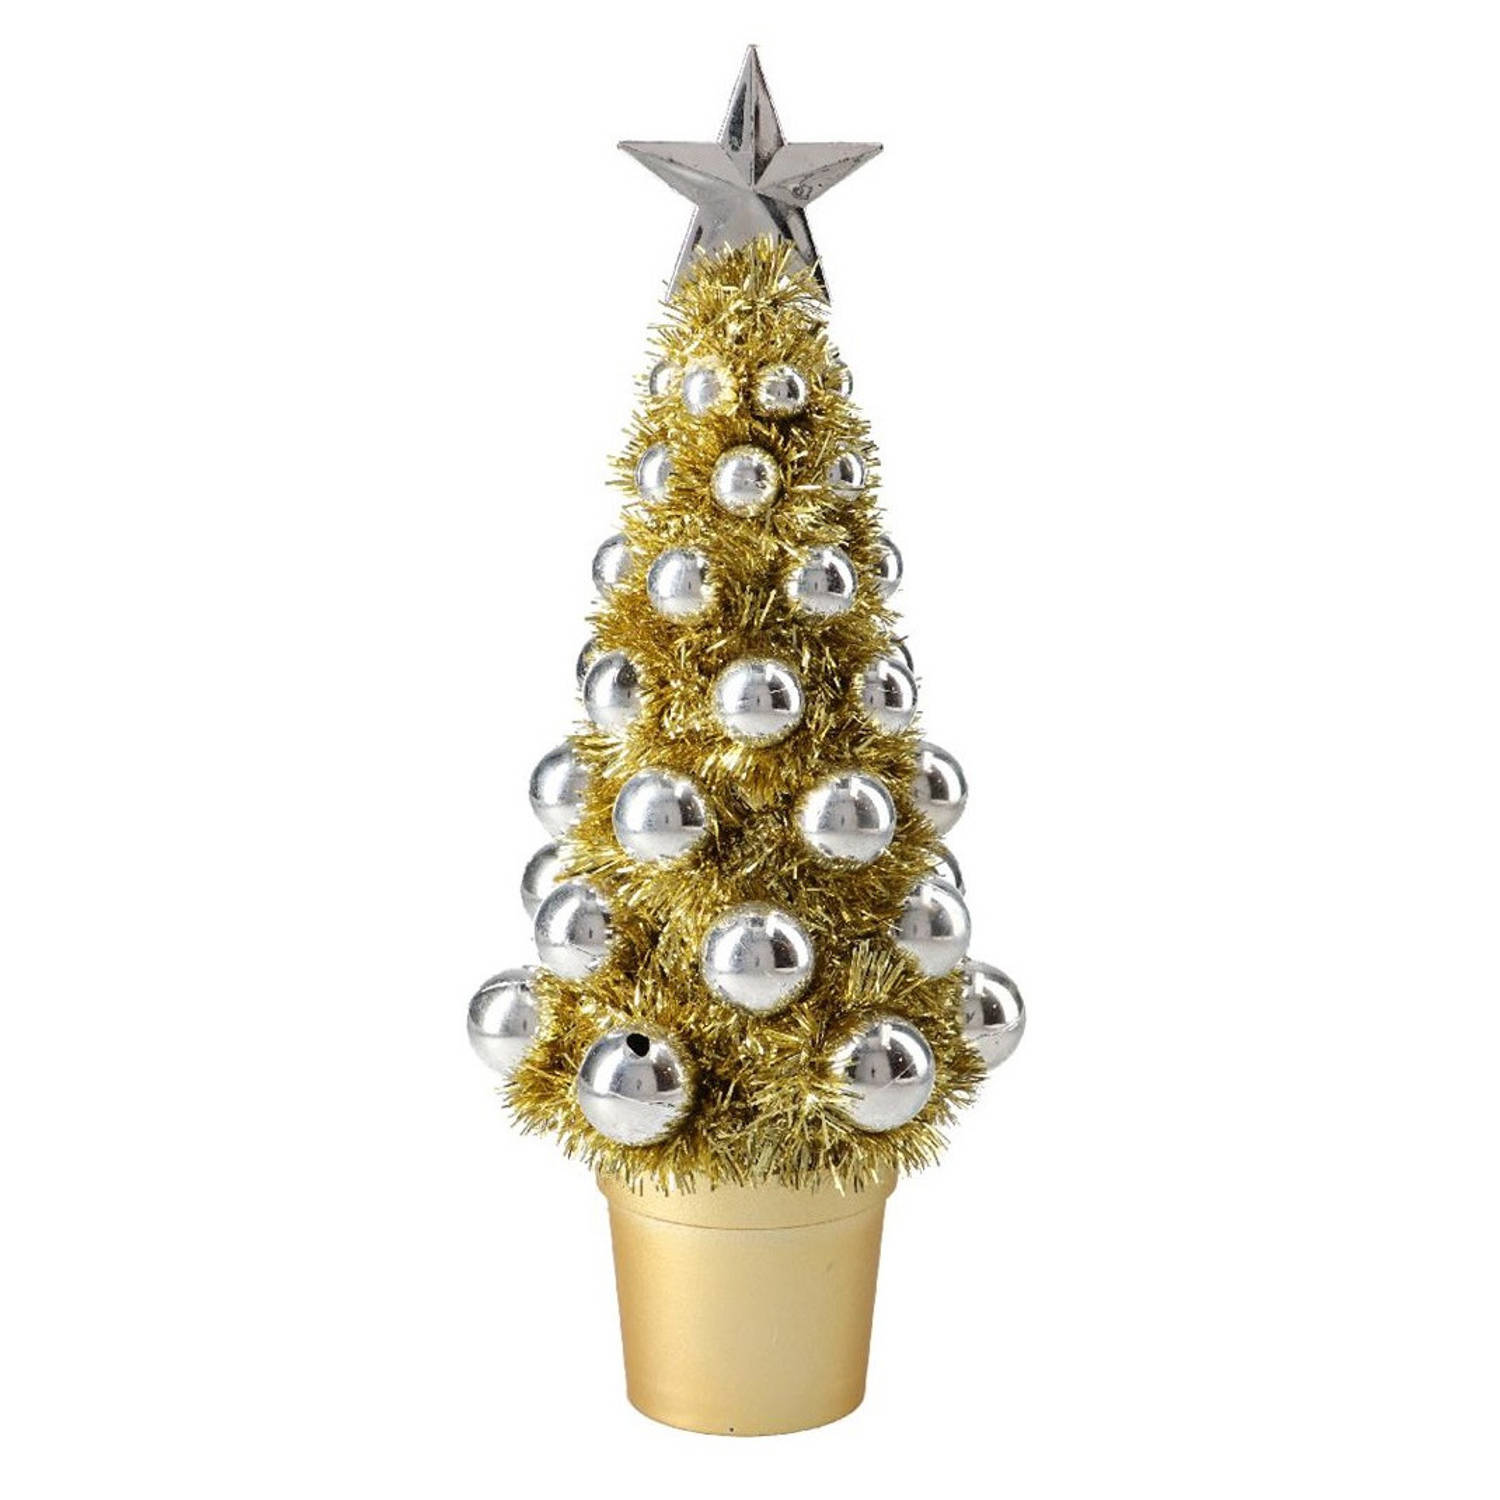 Complete Mini Kunst Kerstboompje-kunstboompje Goud-zilver Met Kerstballen 30 Cm Kunstkerstboom